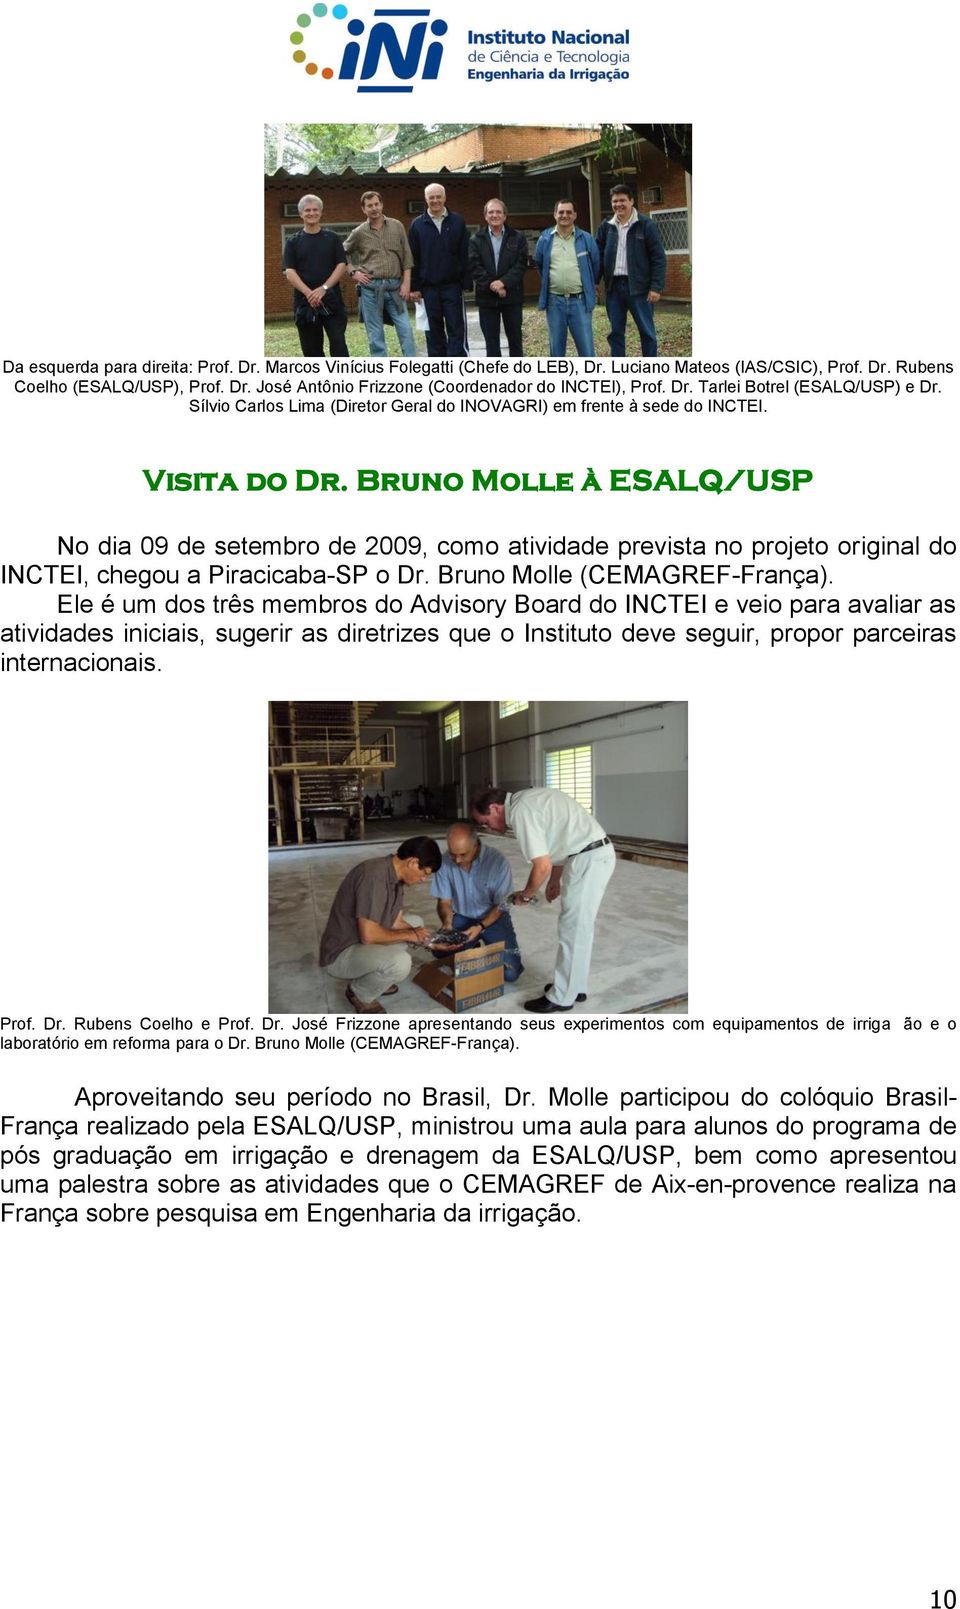 Bruno Molle à ESALQ/USP No dia 09 de setembro de 2009, como atividade prevista no projeto original do INCTEI, chegou a Piracicaba-SP o Dr. Bruno Molle (CEMAGREF-França).